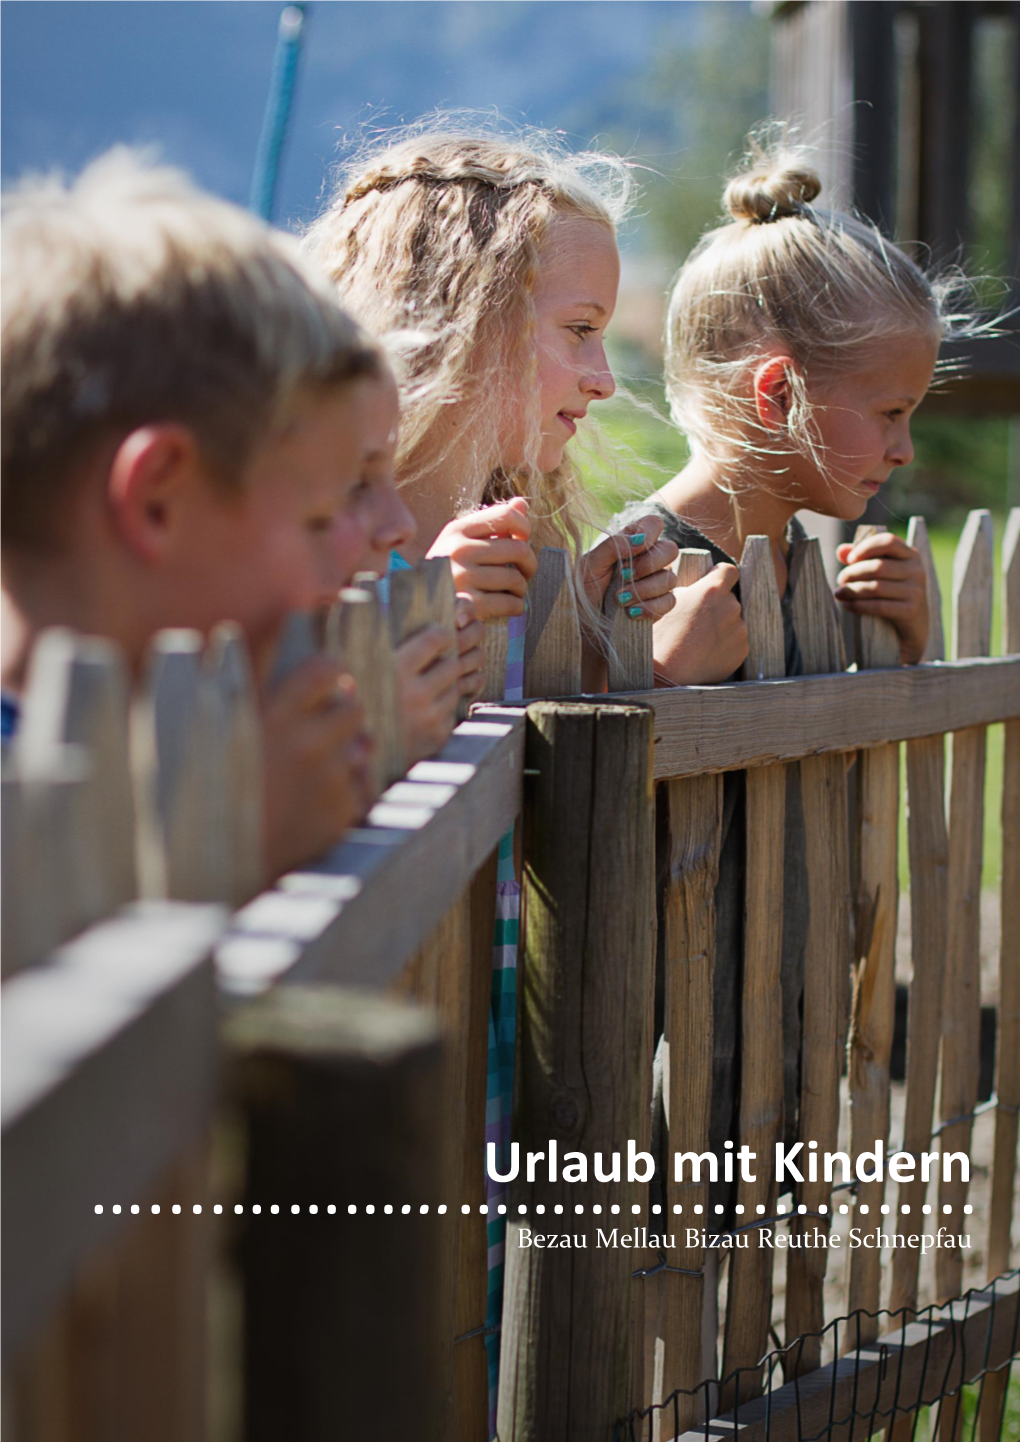 Urlaub Mit Kindern Bezau Mellau Bizau Reuthe Schnepfau